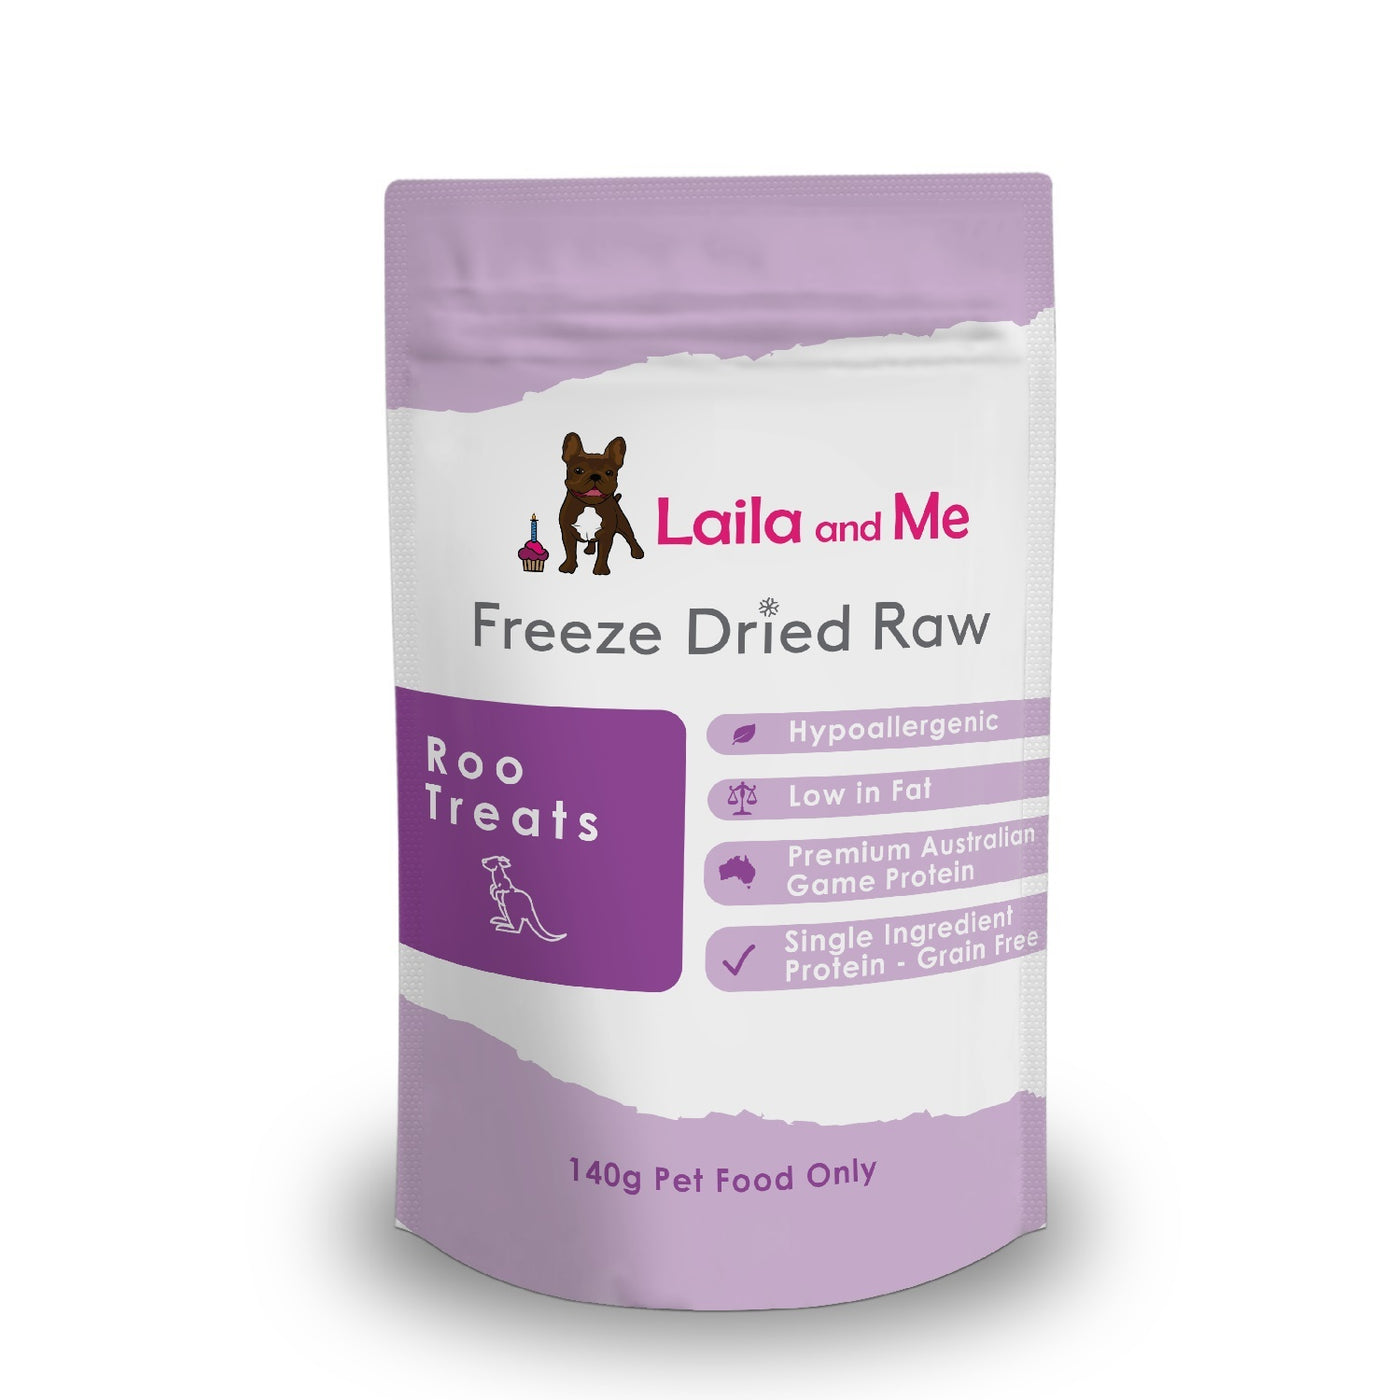 Laila & Me Freeze Dried Raw Kangaroo Treats